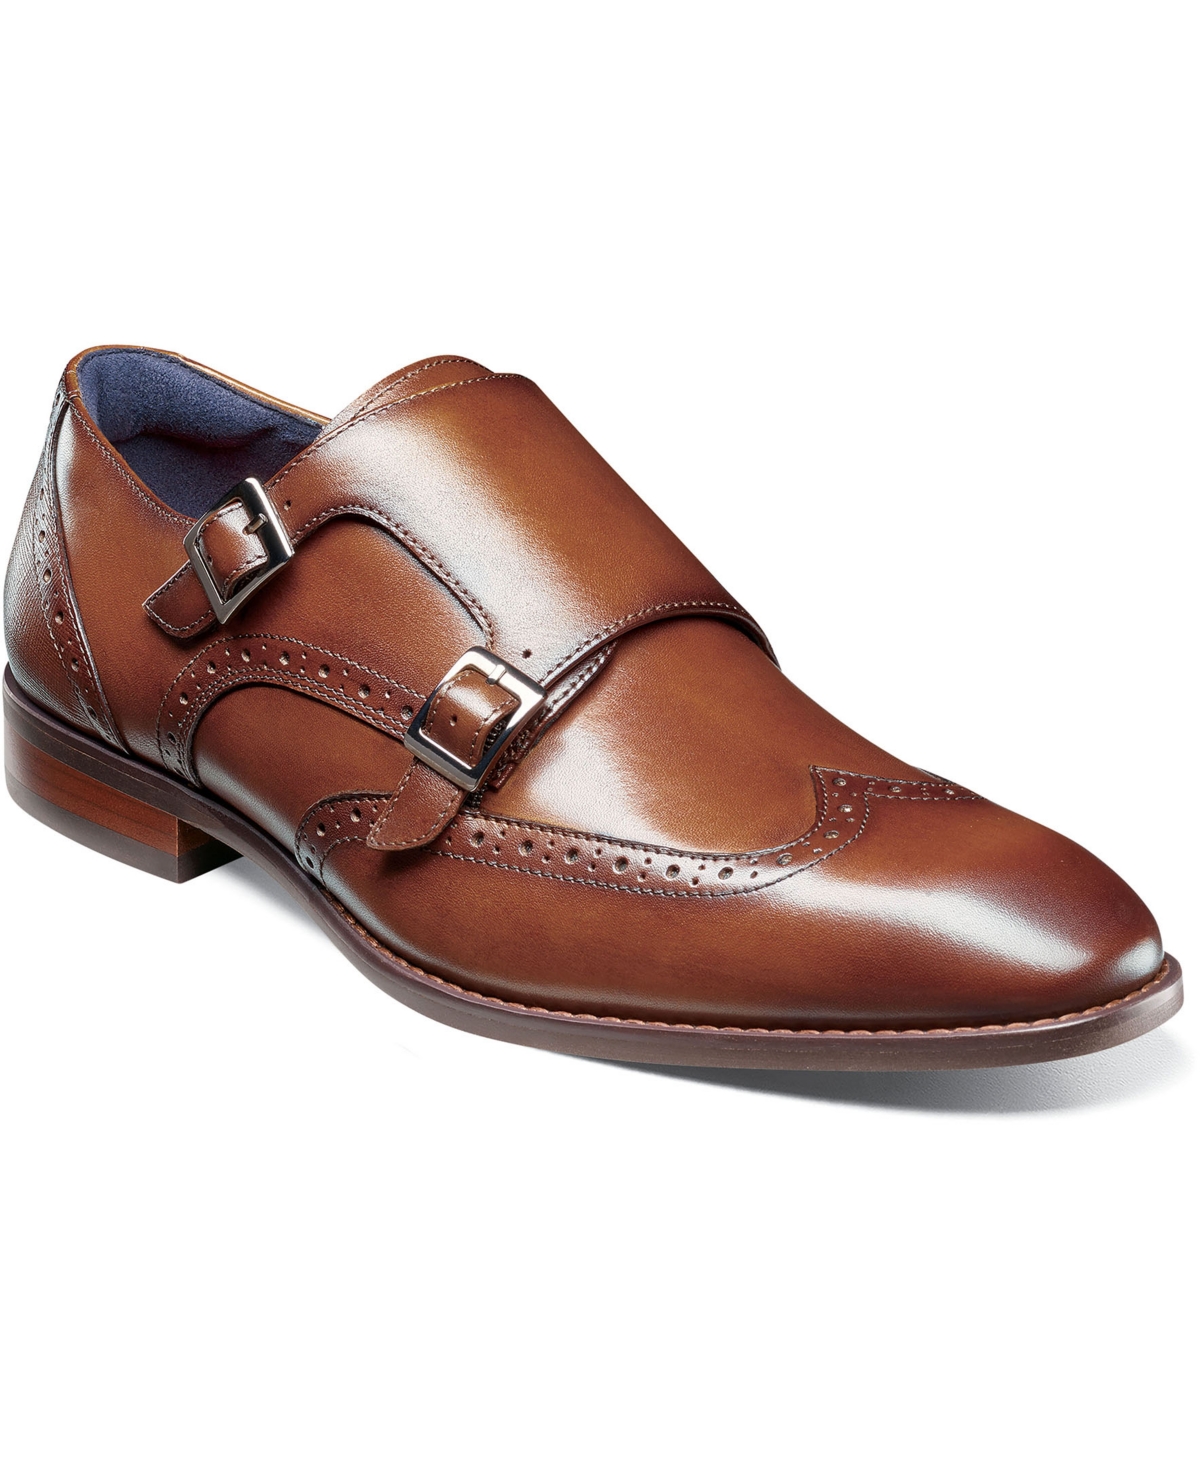 Men's Karson Wingtip Double-Monk Strap Dress Shoe - Cognac